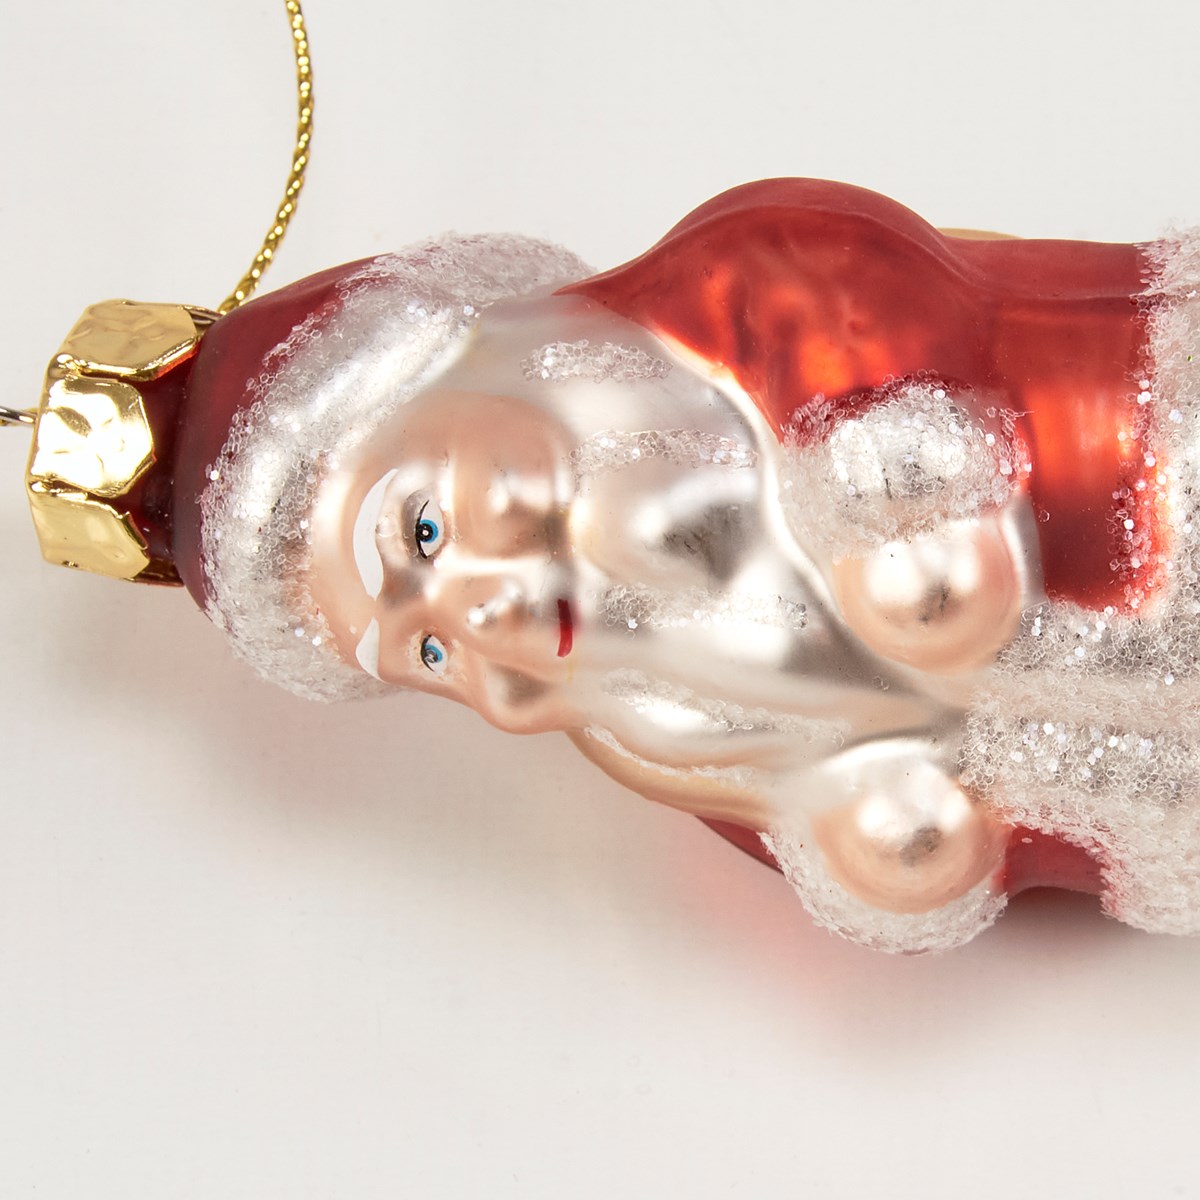 Glass Jolly Santa Ornament - Glass, Metal, Glitter